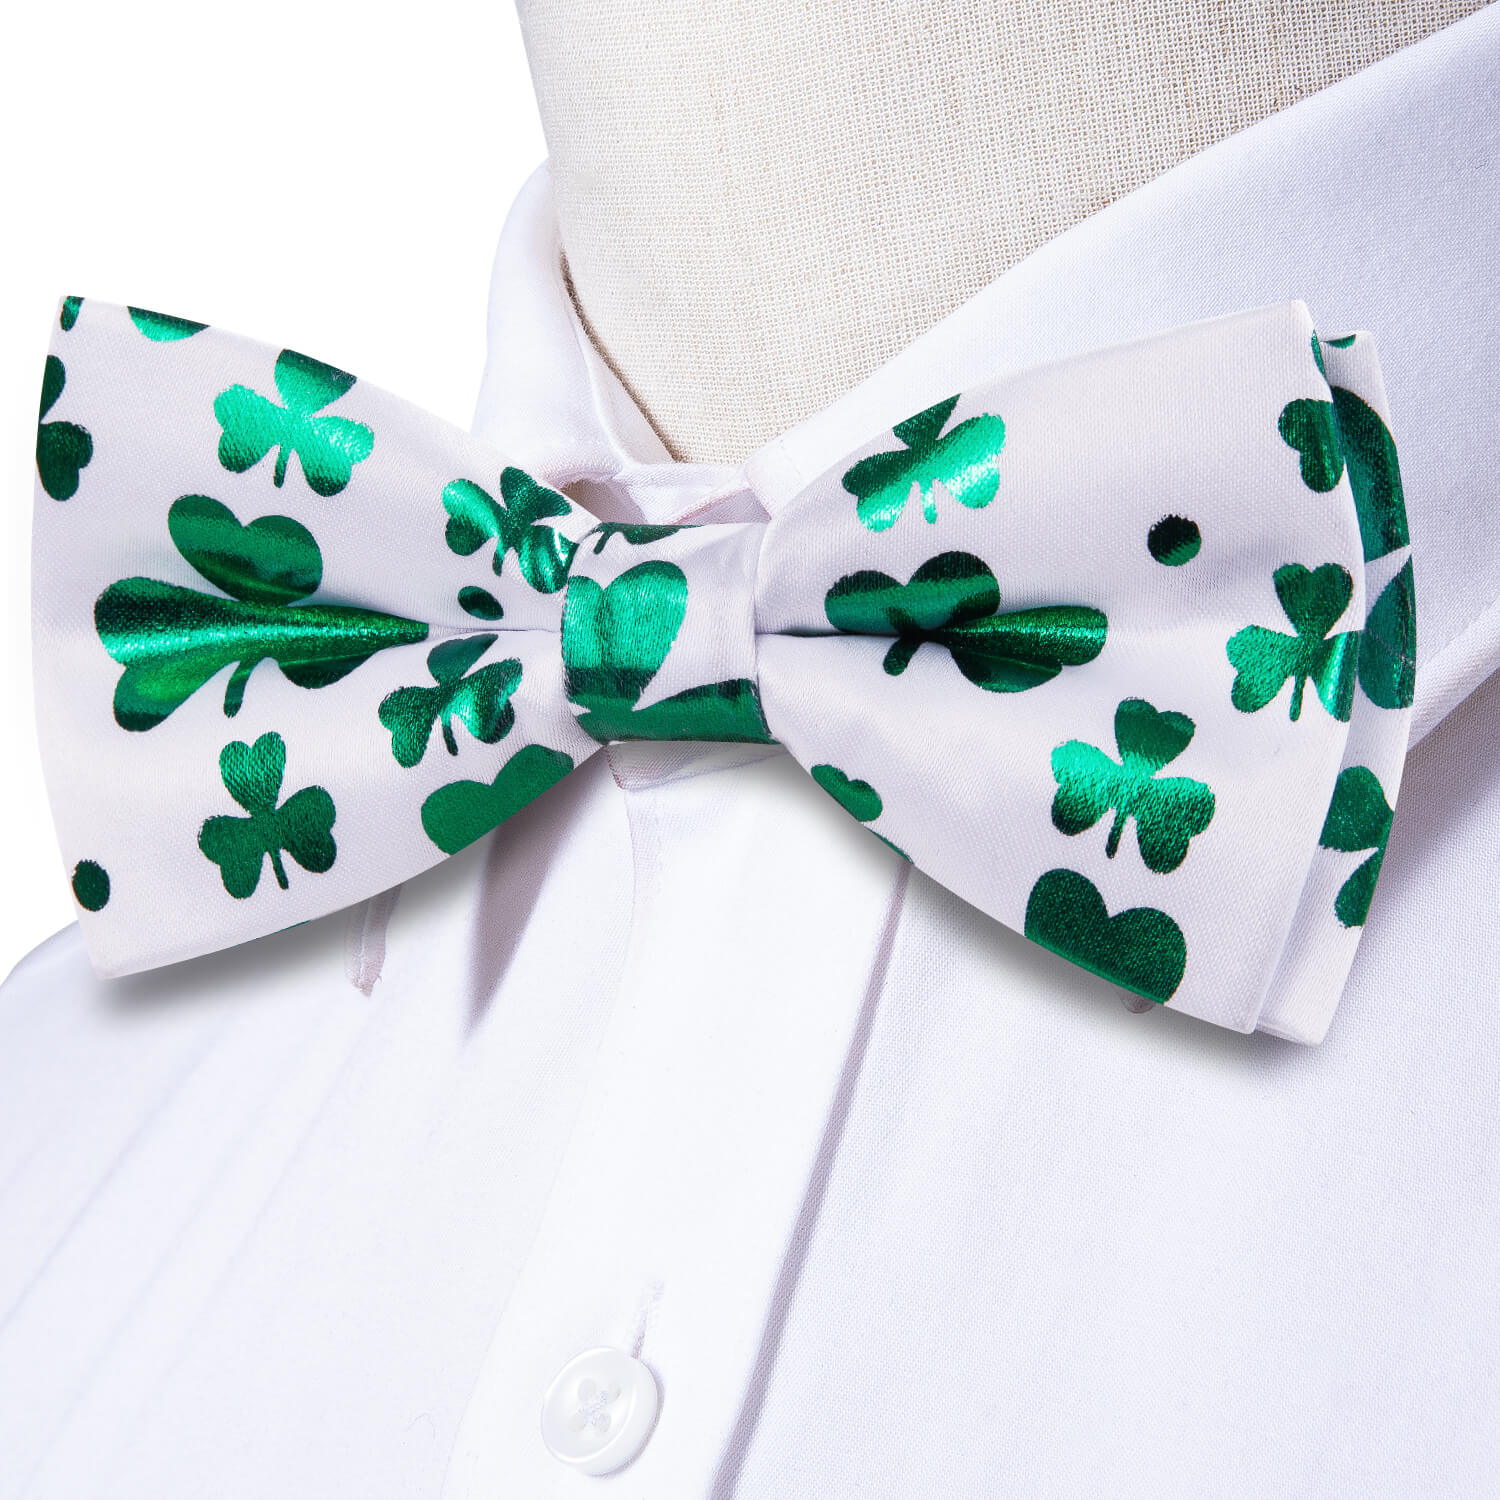 Hi-Tie White Green Clover Pre-Tied Bow Tie Handkerchief Cufflink Set